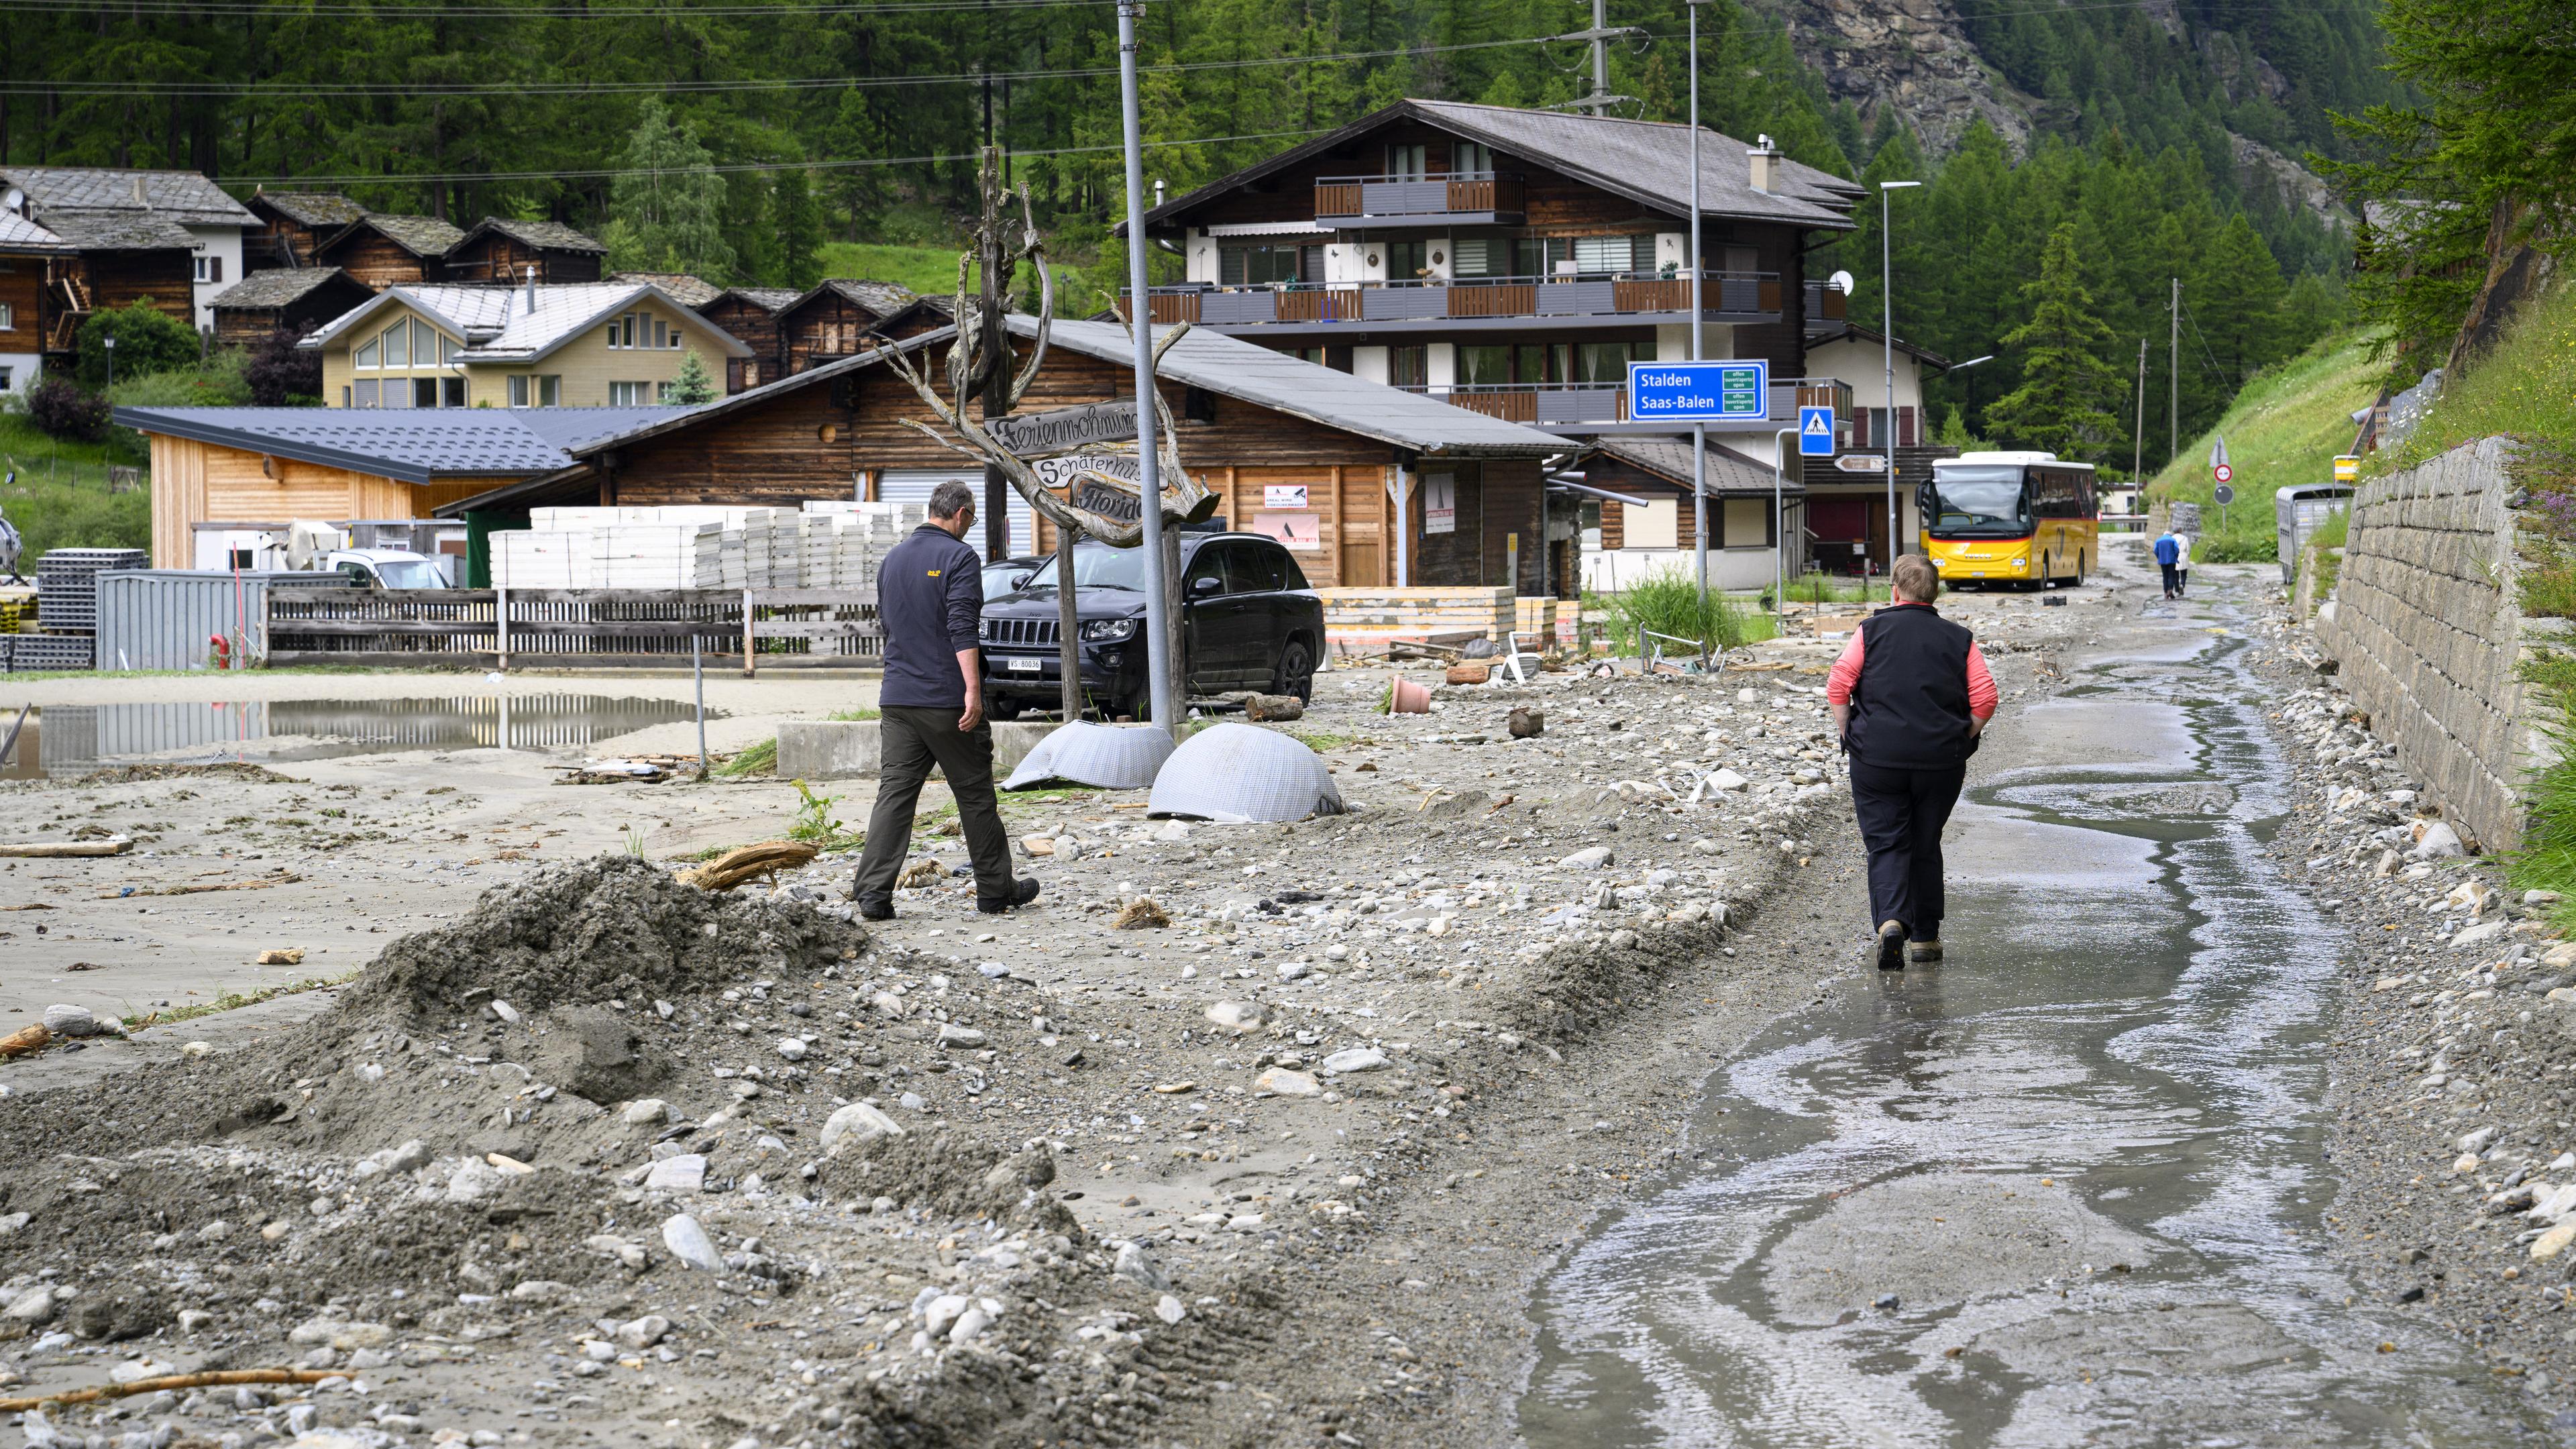  Schweiz, Saas-Grund: Die Zerstörung nach einem Erdrutsch, der durch Unwetter verursacht wurde. Massive Gewitter und Regenfälle führten zu Überschwemmungen und großflächigen Erdrutschen.